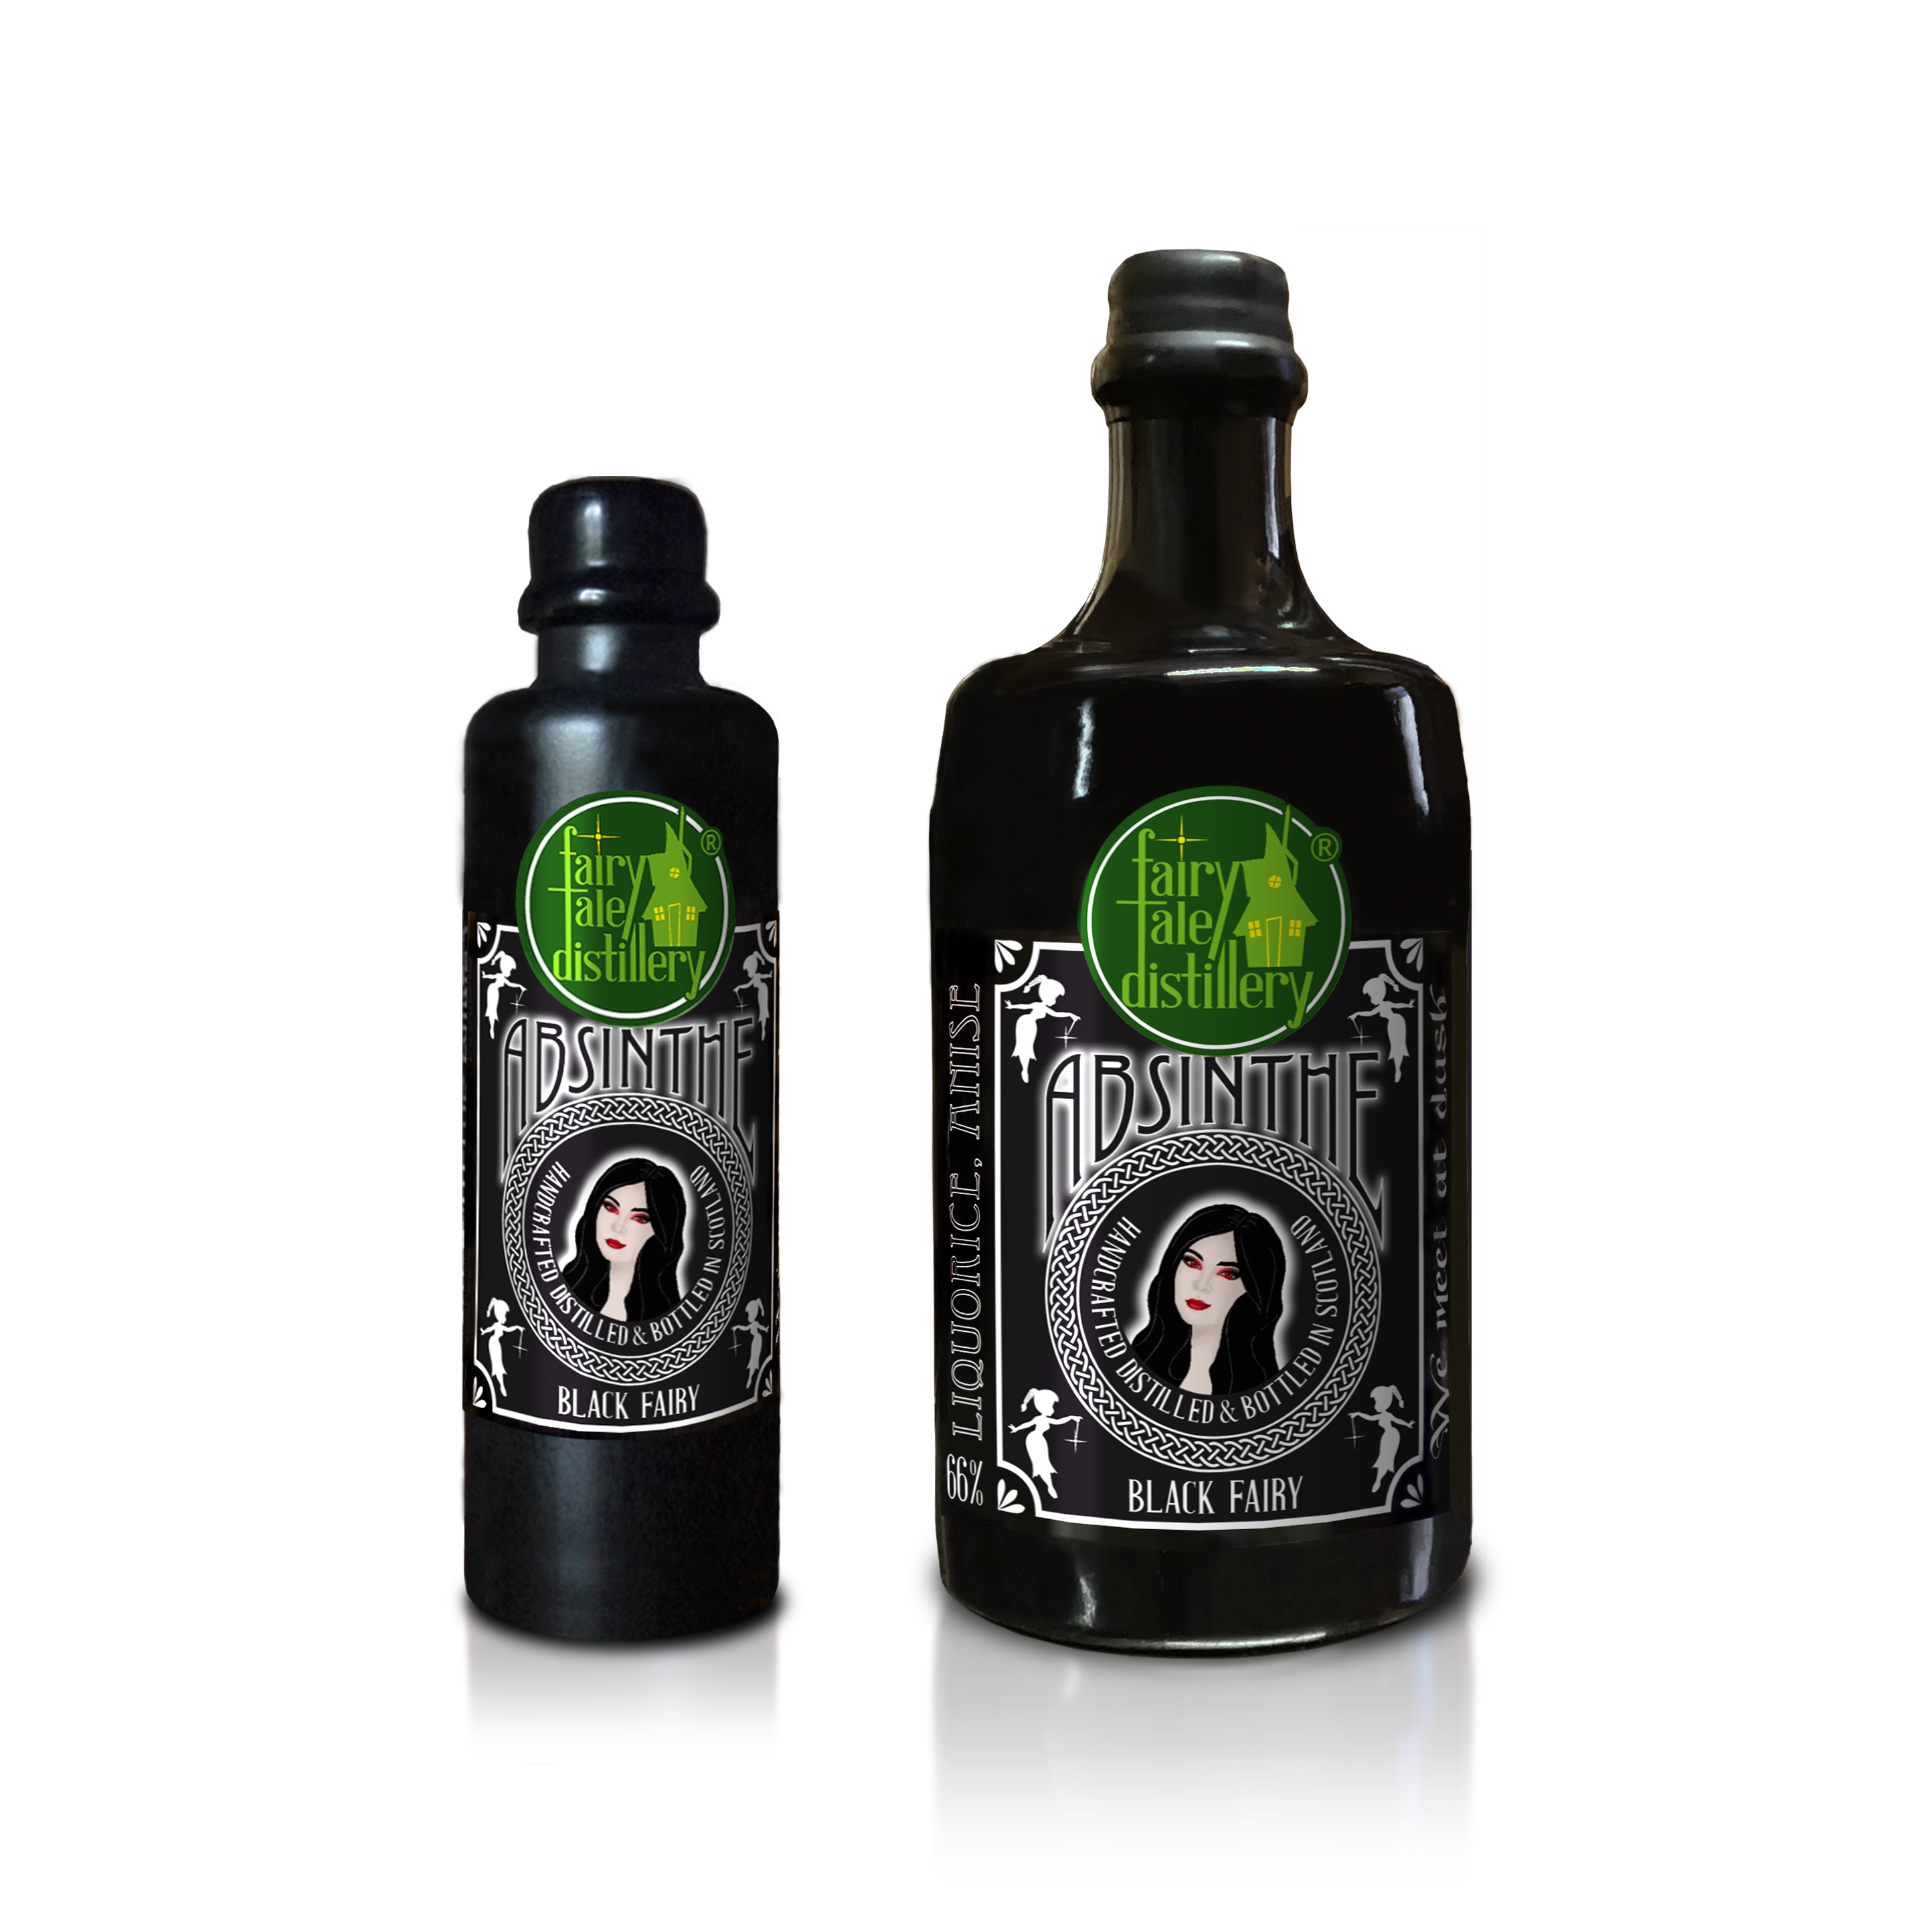 Black Fairy Highland Absinthe bottle from Fairytale Distillery